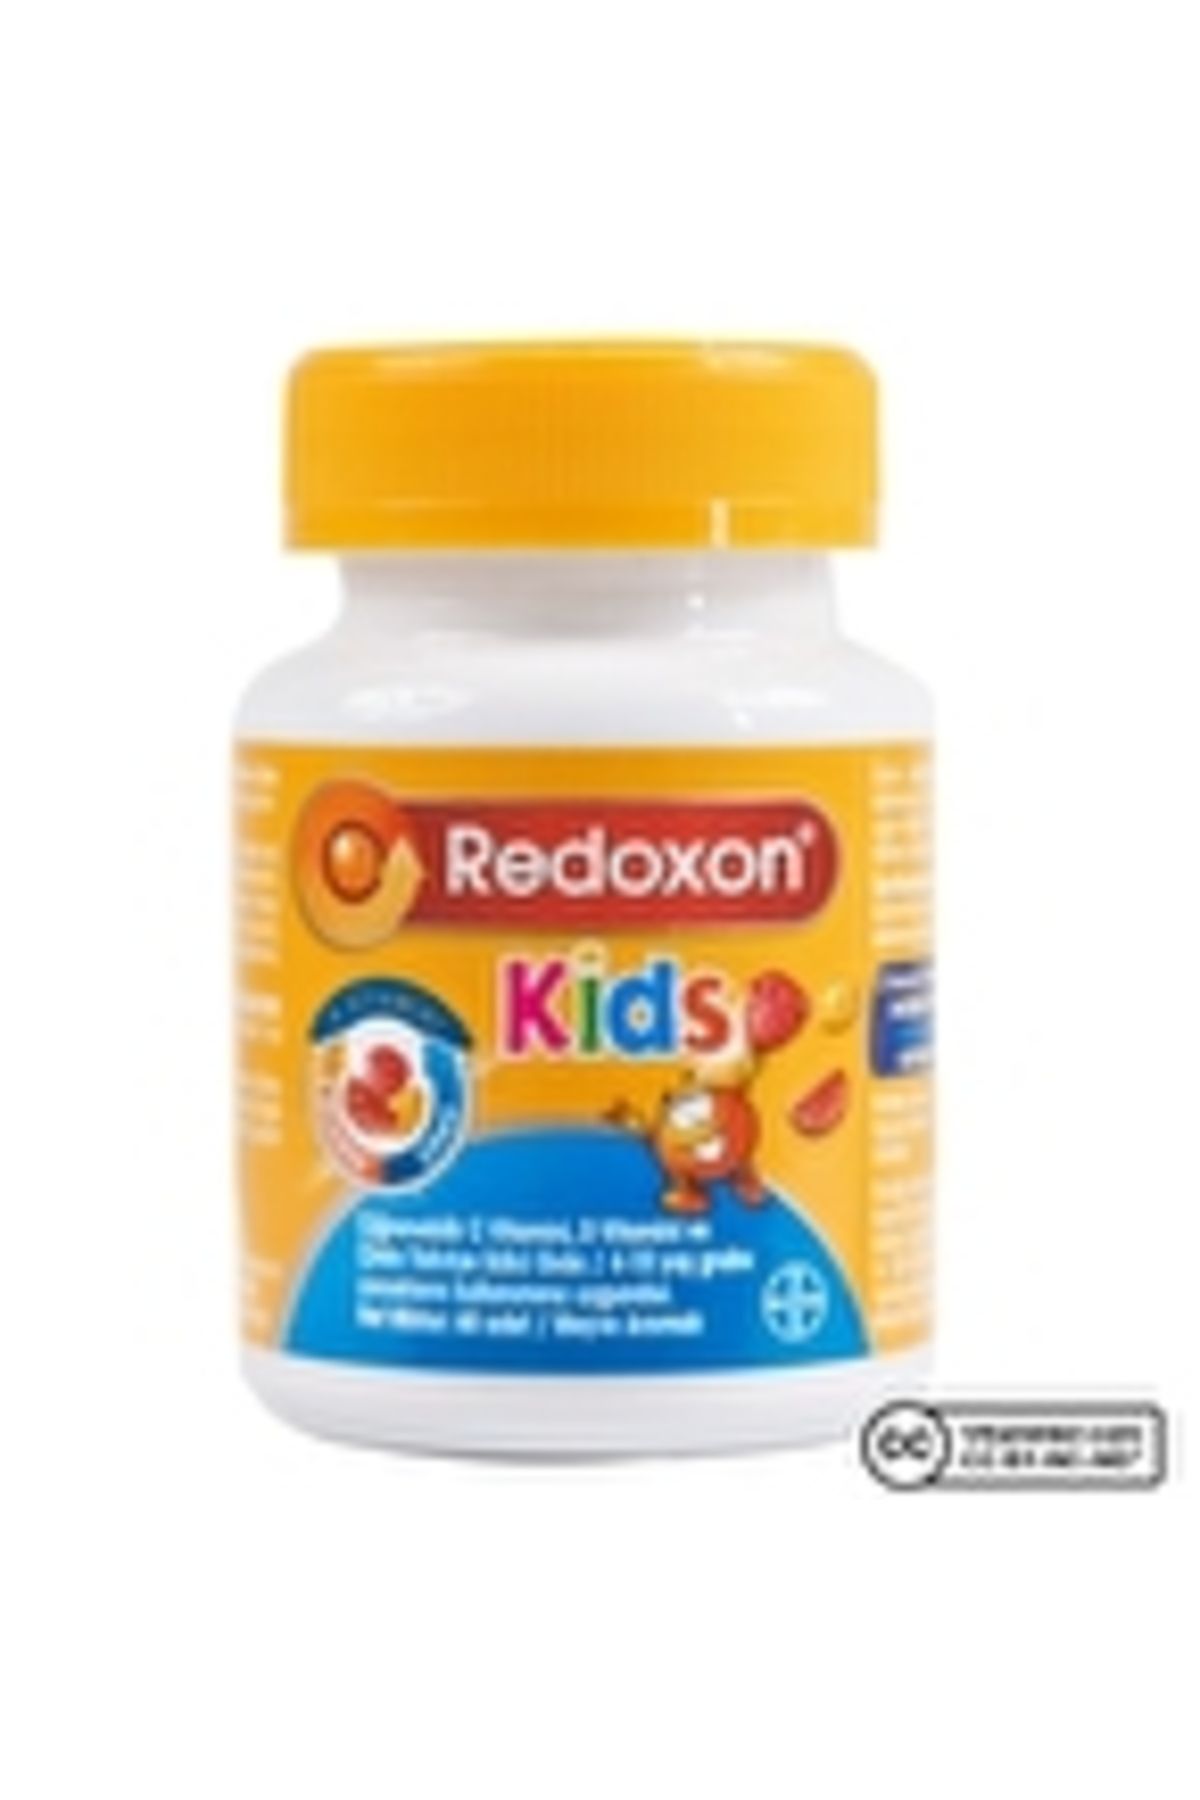 Redoxon Kids 60 Çiğnenebilir Form ( 1 ADET )